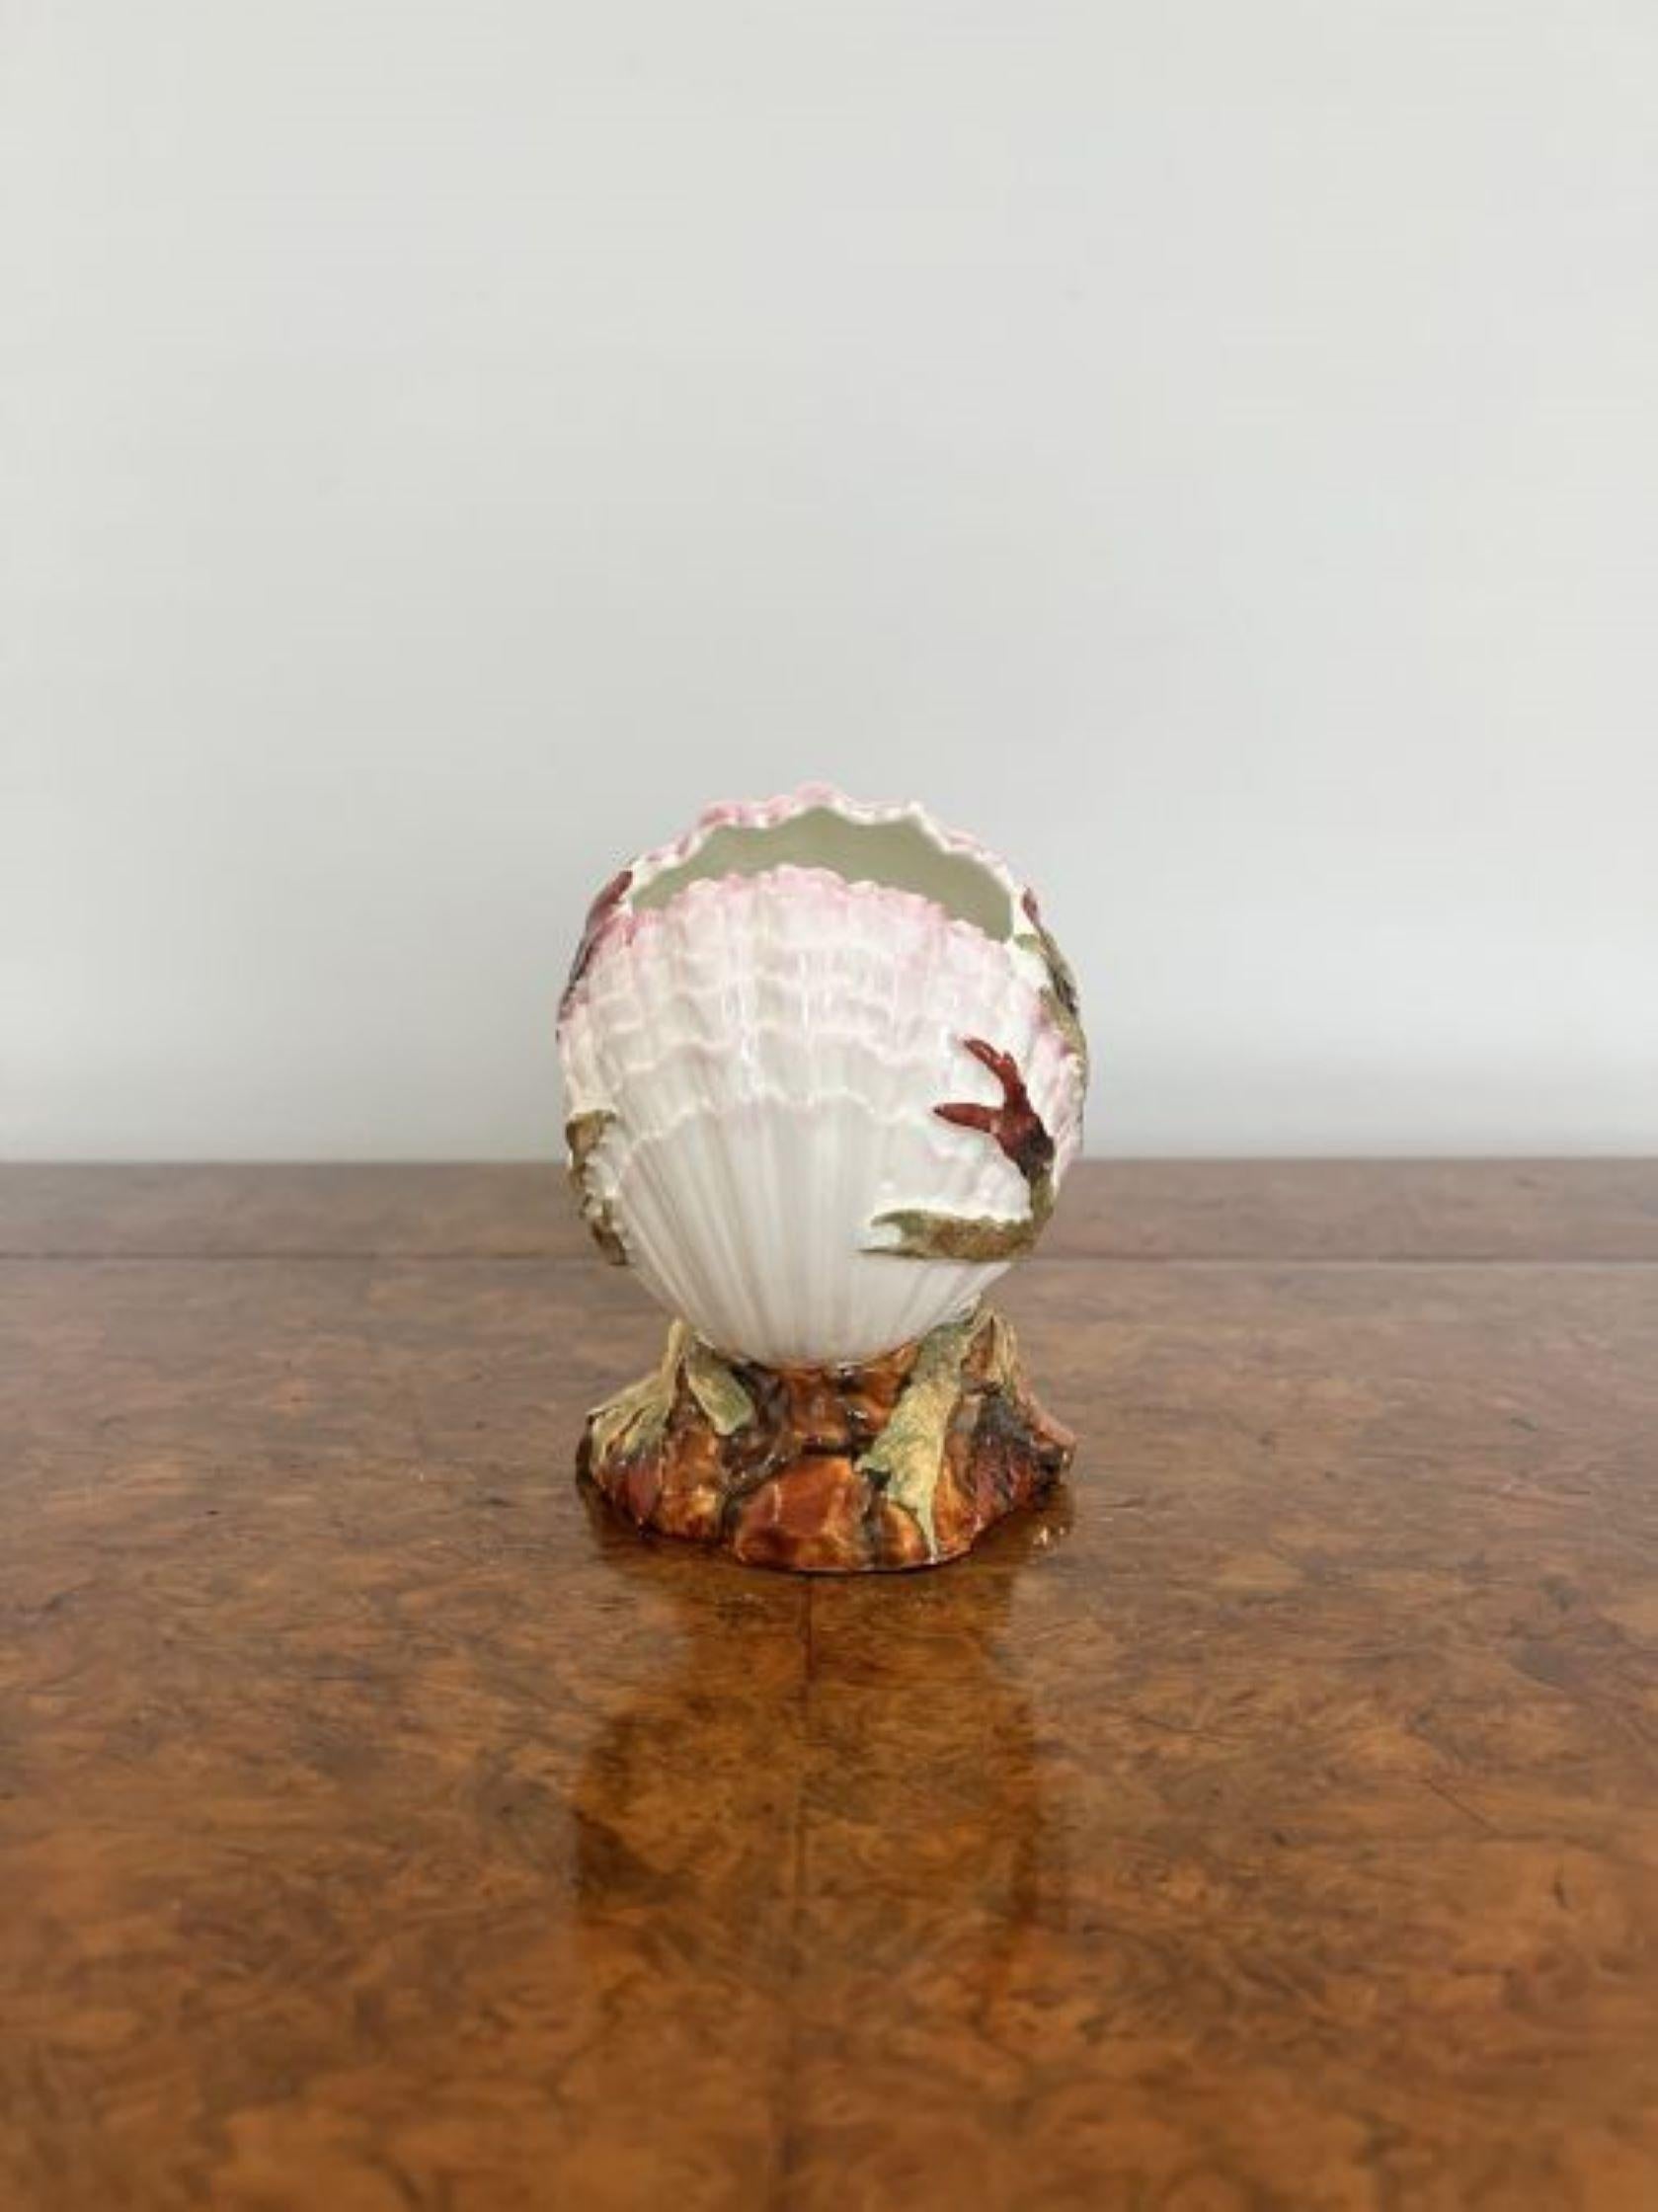 Qualität antiken viktorianischen Porzellan Muschel Vase mit einer Qualität antiken viktorianischen Porzellan Muschel Vase Hand in wunderschönen weißen, orange, rot und grün Farben gemalt.